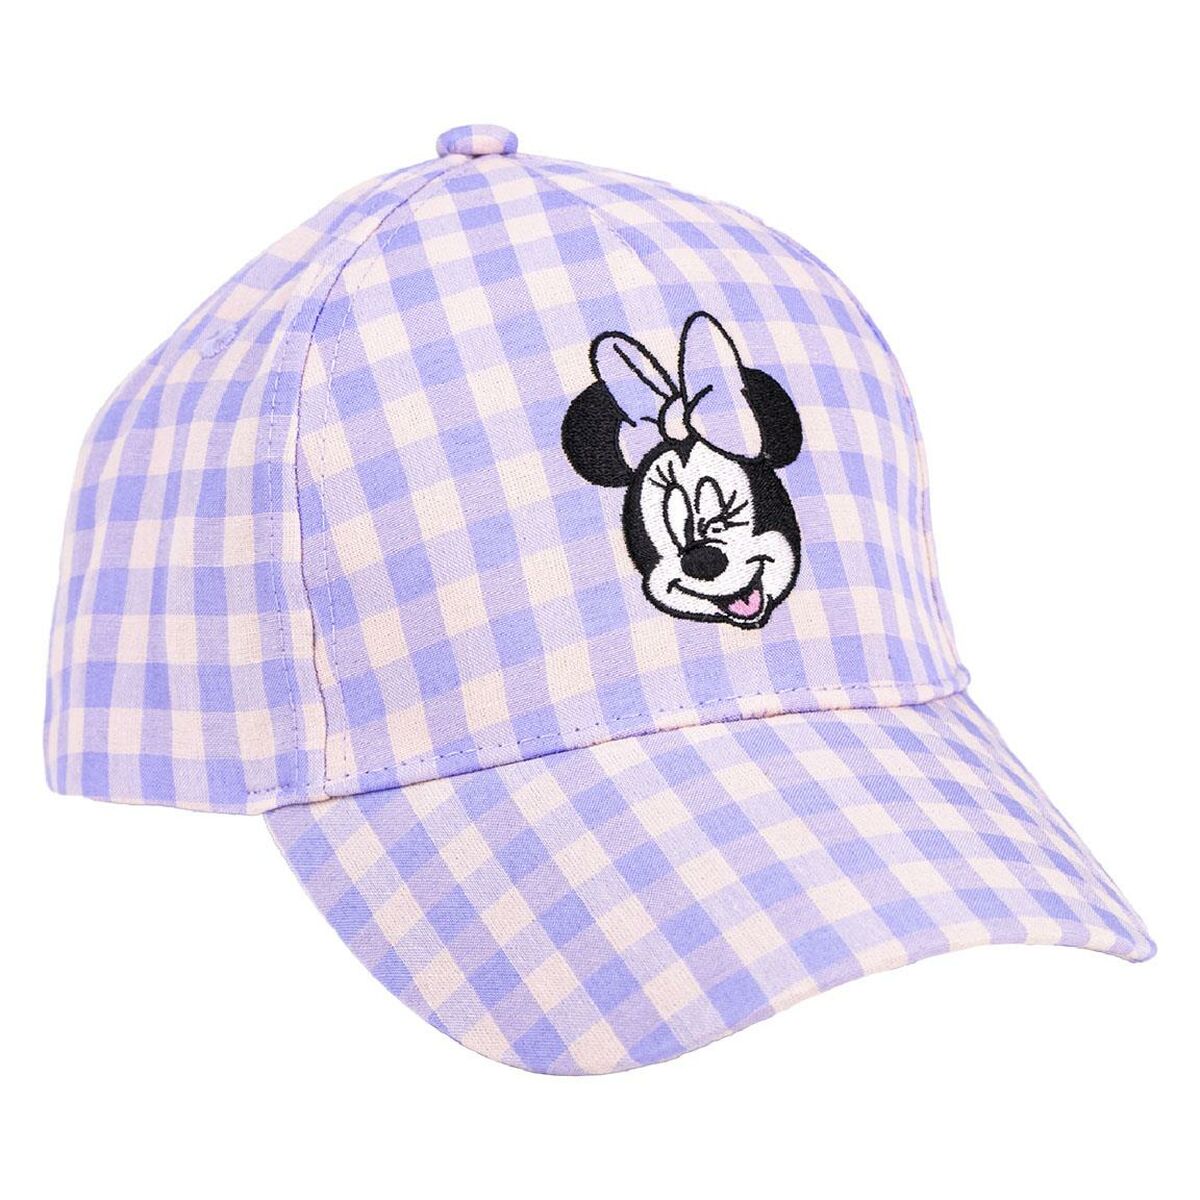 Șapcă pentru Copii Minnie Mouse Liliachiu (53 cm)